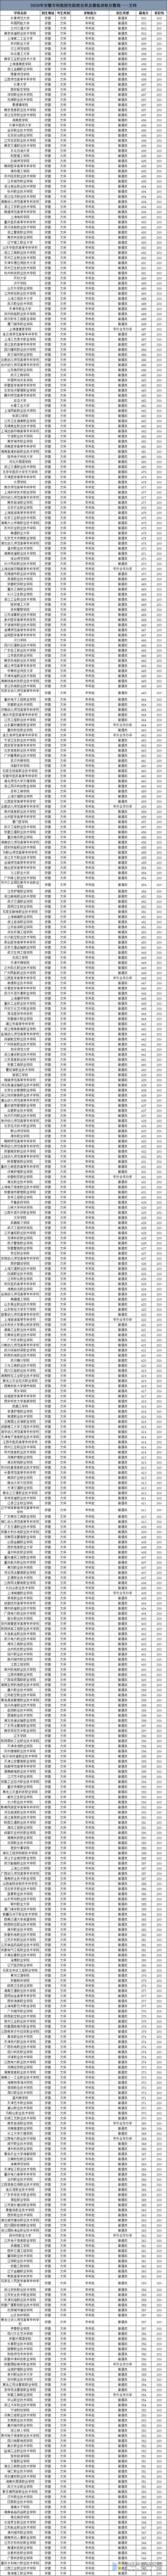 2020年安徽高考专科批招生院校名单及最低录取分数线——文科